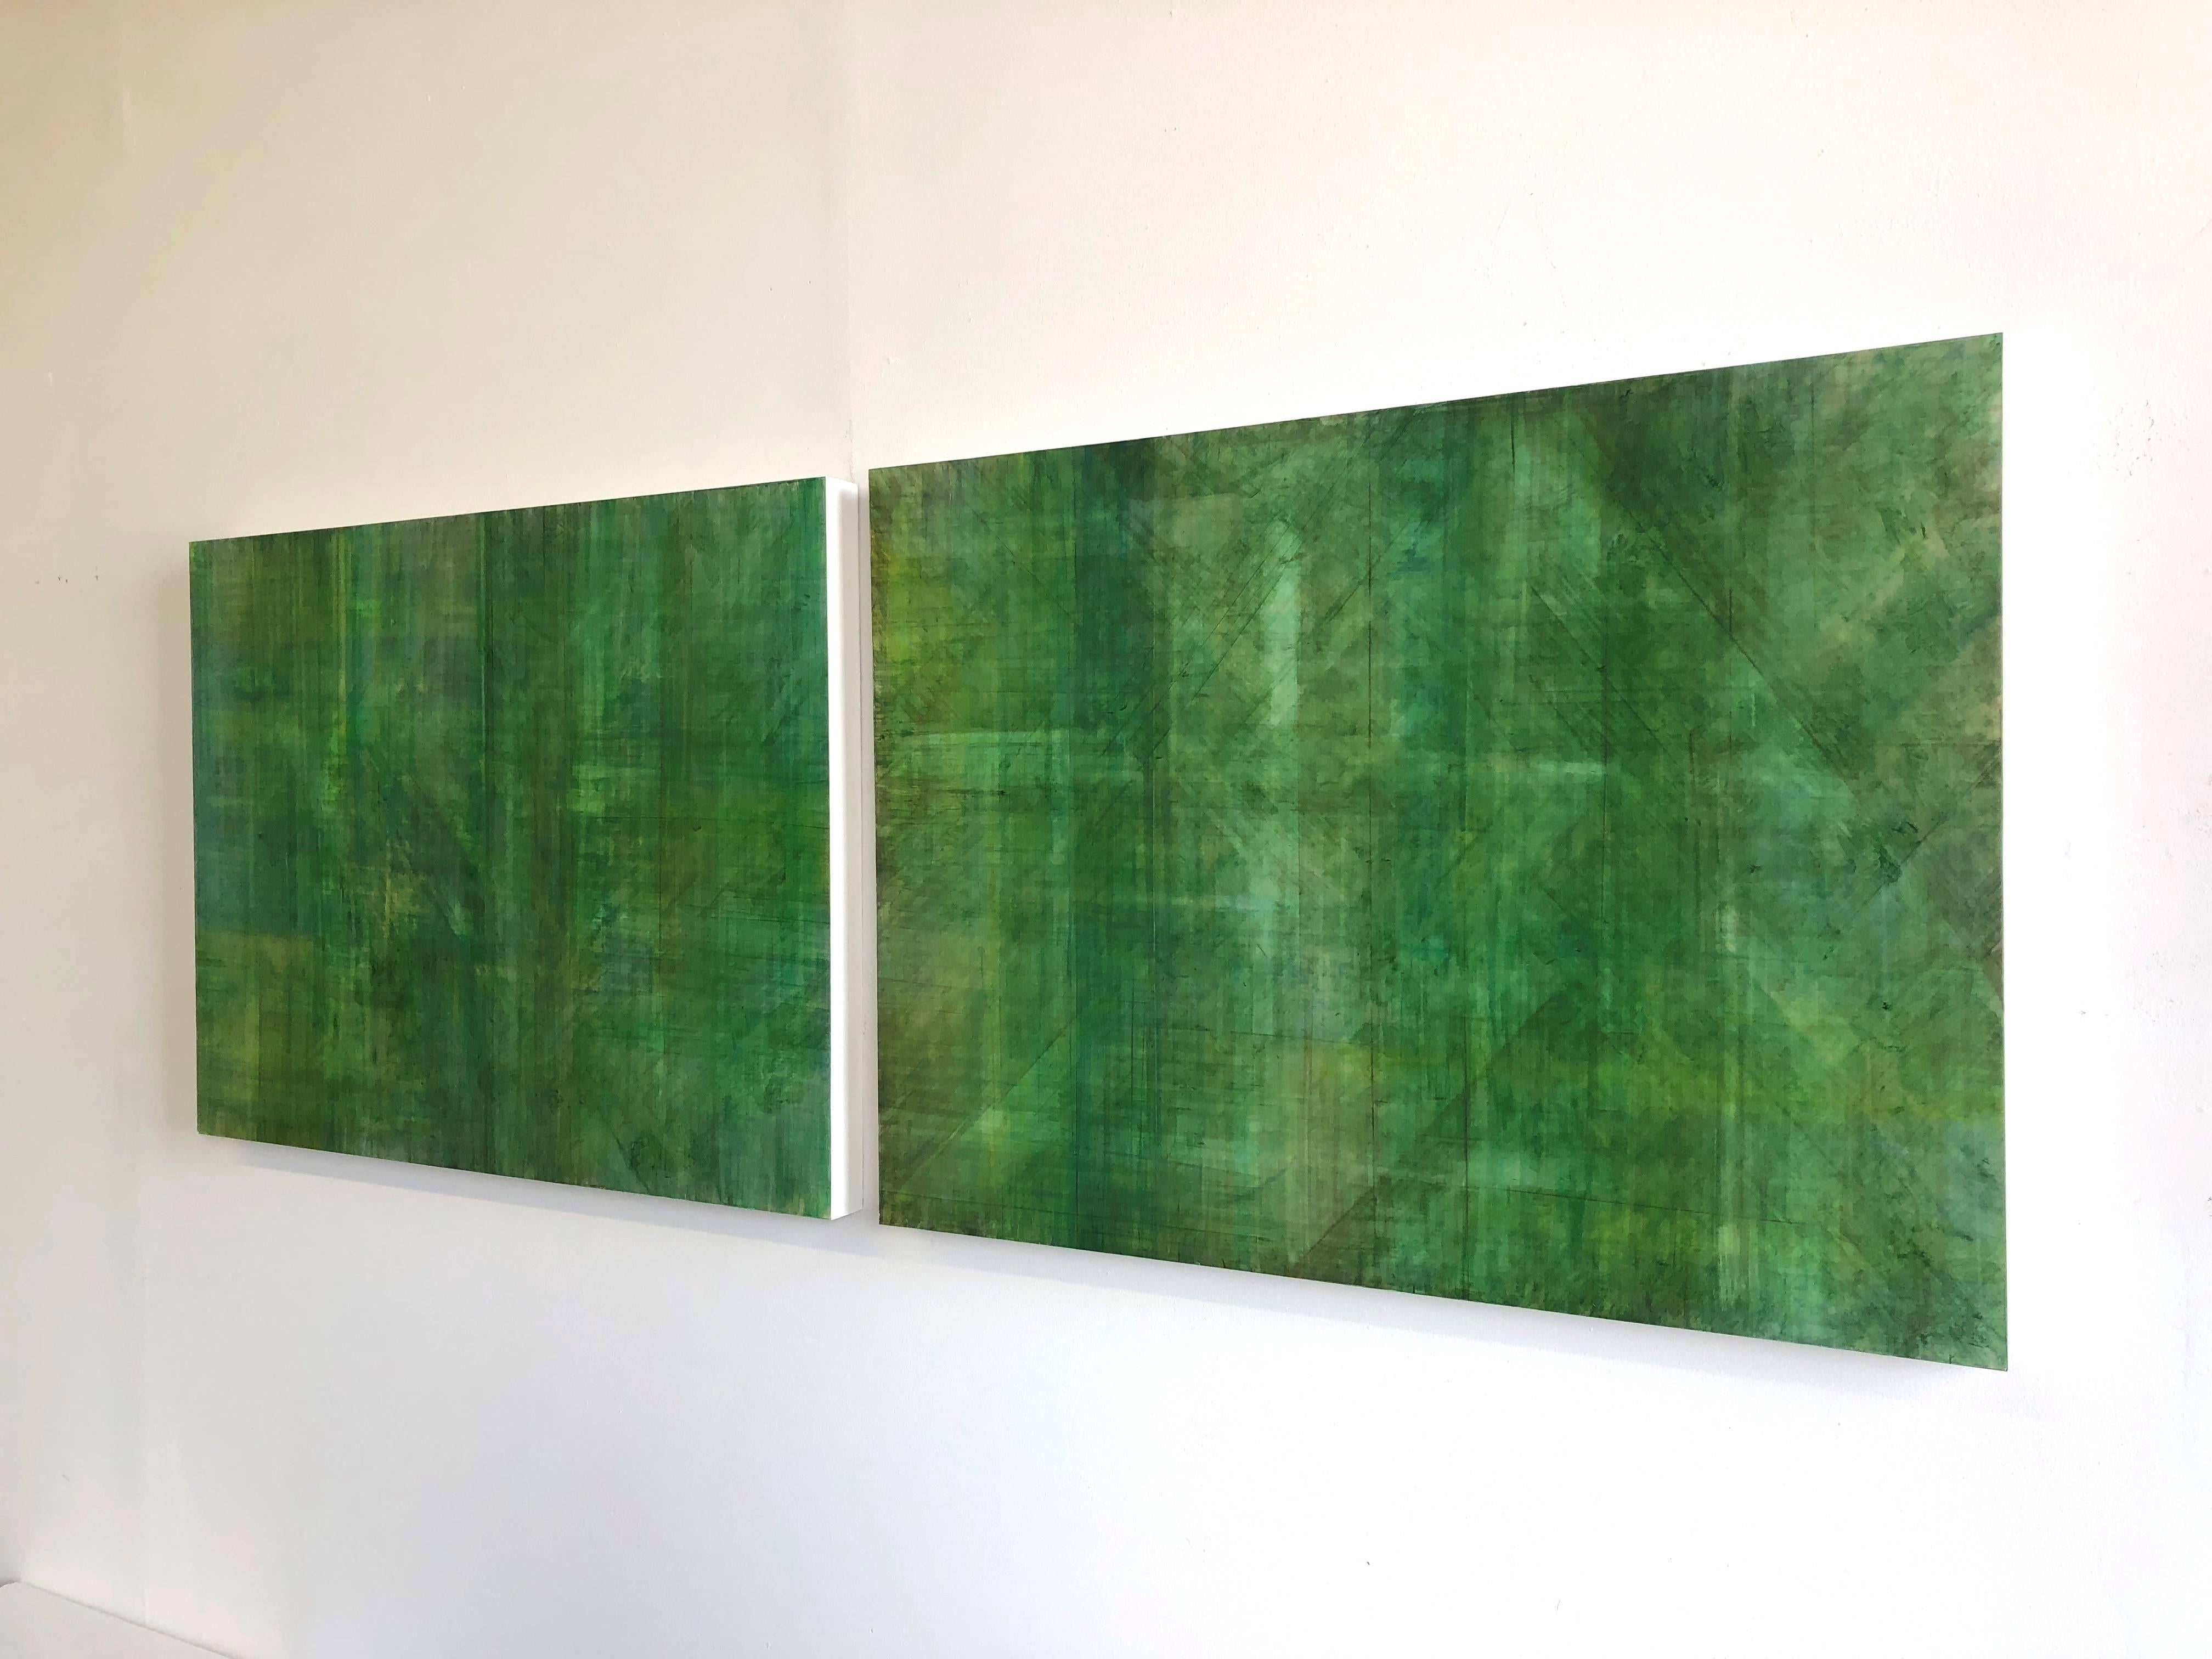 C14-10 (Minimalistische grüne Wandskulptur in zwei Tafeln, Diptychon) (Grün), Abstract Painting, von Ginny Fox